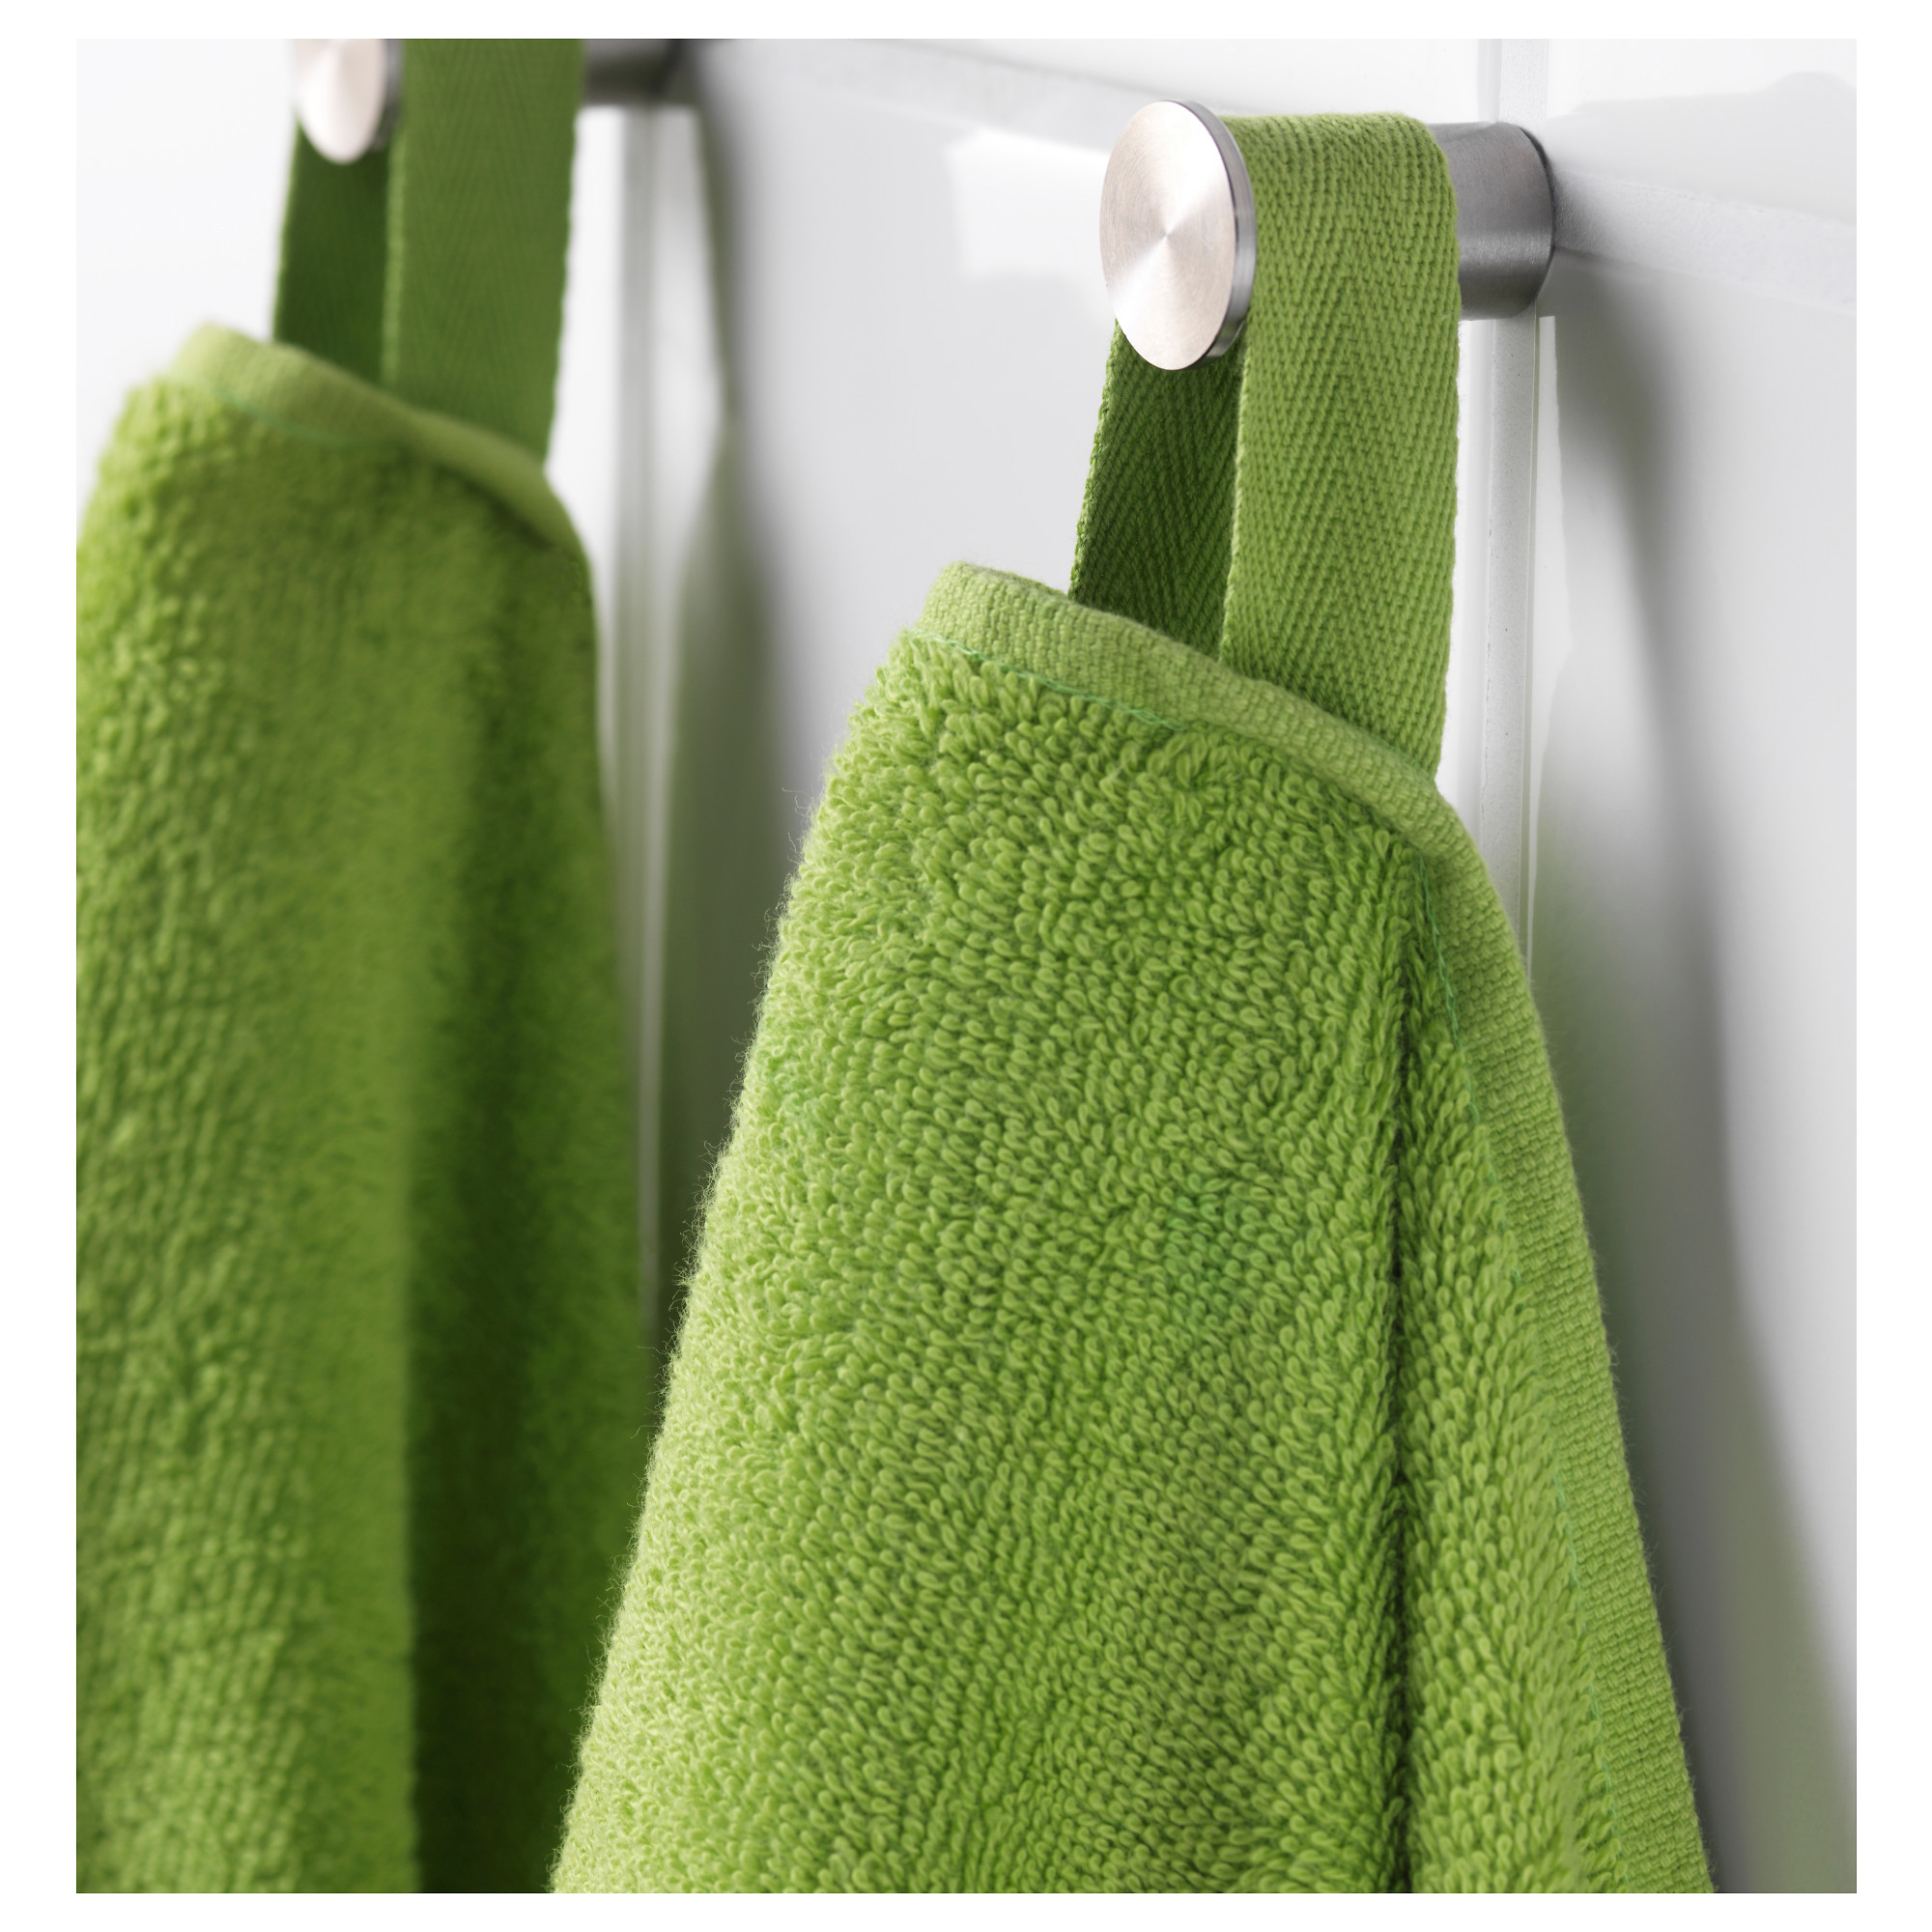 Ikea полотенце. Икеа ГЭРЕН полотенце. Полотенце ГЭРЕН банное. Банное полотенце зеленое икеа. Haren полотенце икеа.